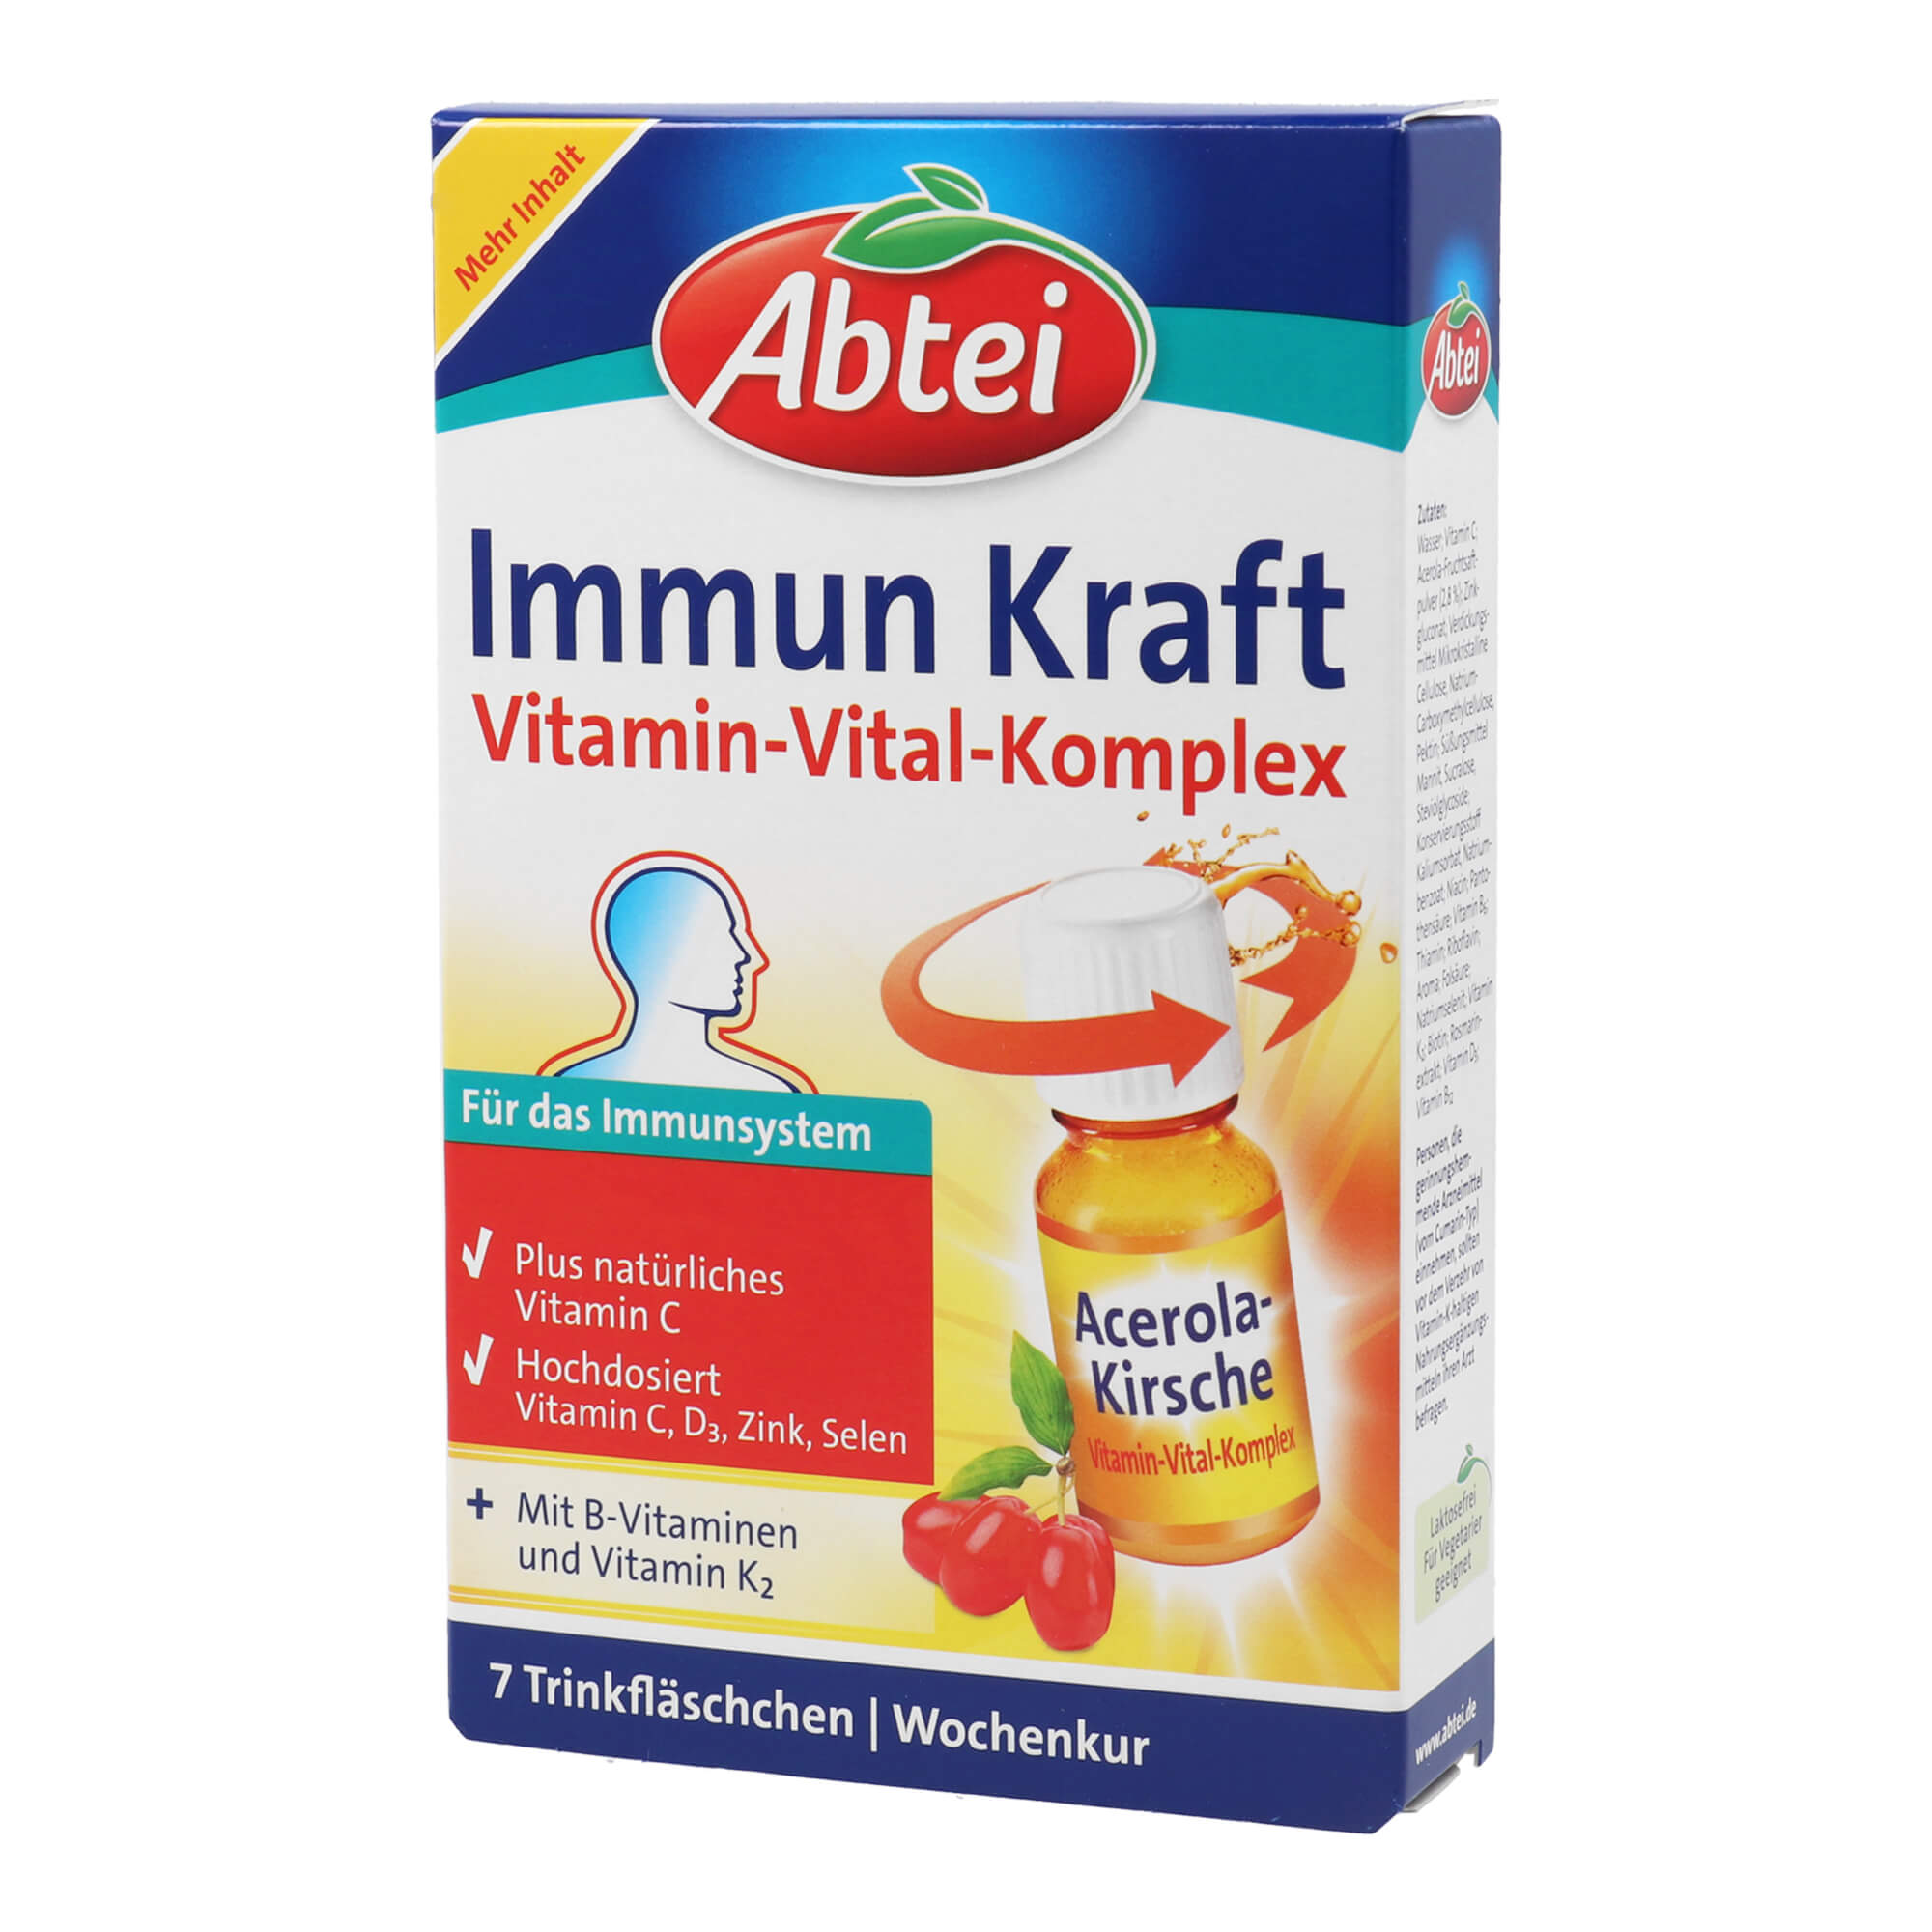 Nahrungsergänzungsmittel mit Acerola-Kirsche. Zur Stärkung des Immunsystems.